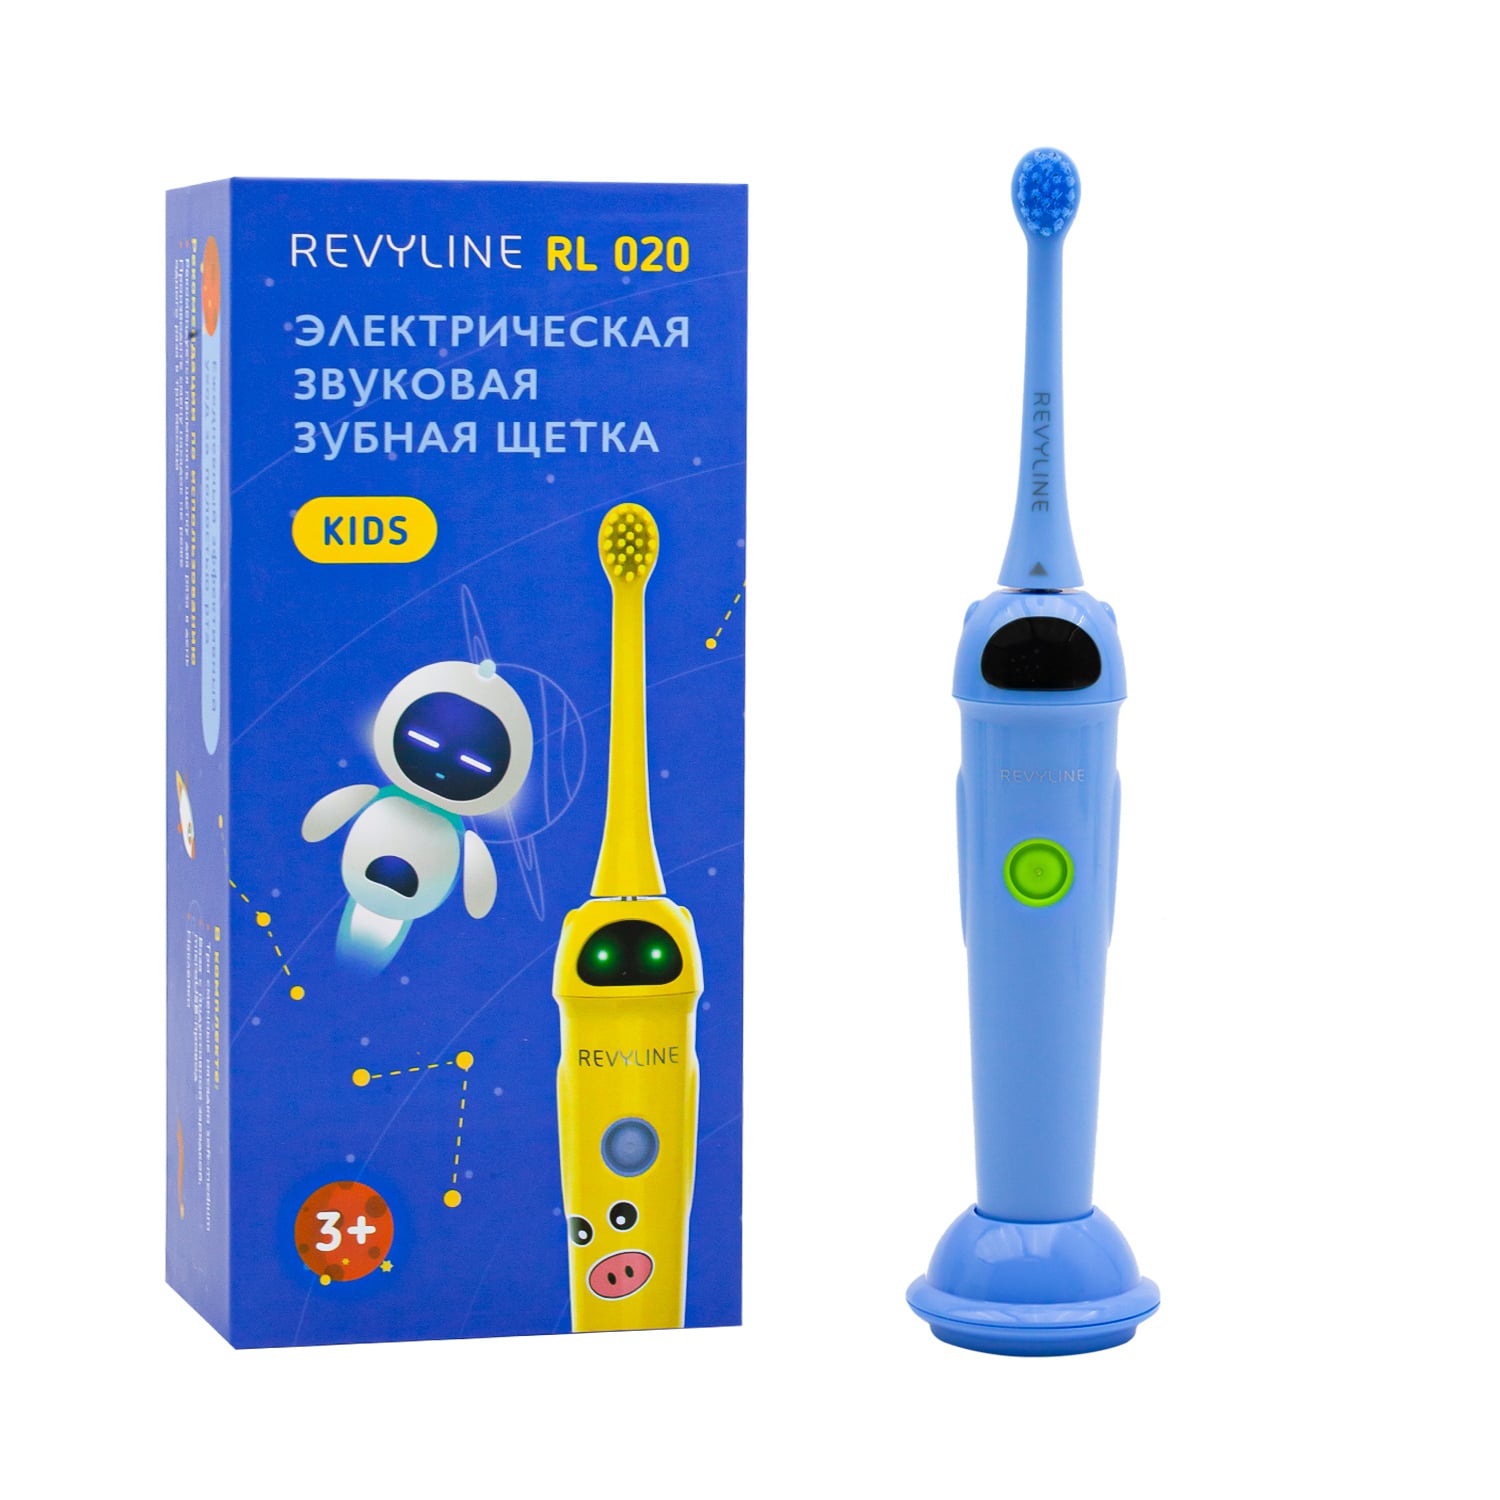 REVYLINE Детская электрическая звуковая зубная щетка RL 020 3+, синяя, 1 шт (REVYLINE, Электрические зубные щетки) цена и фото